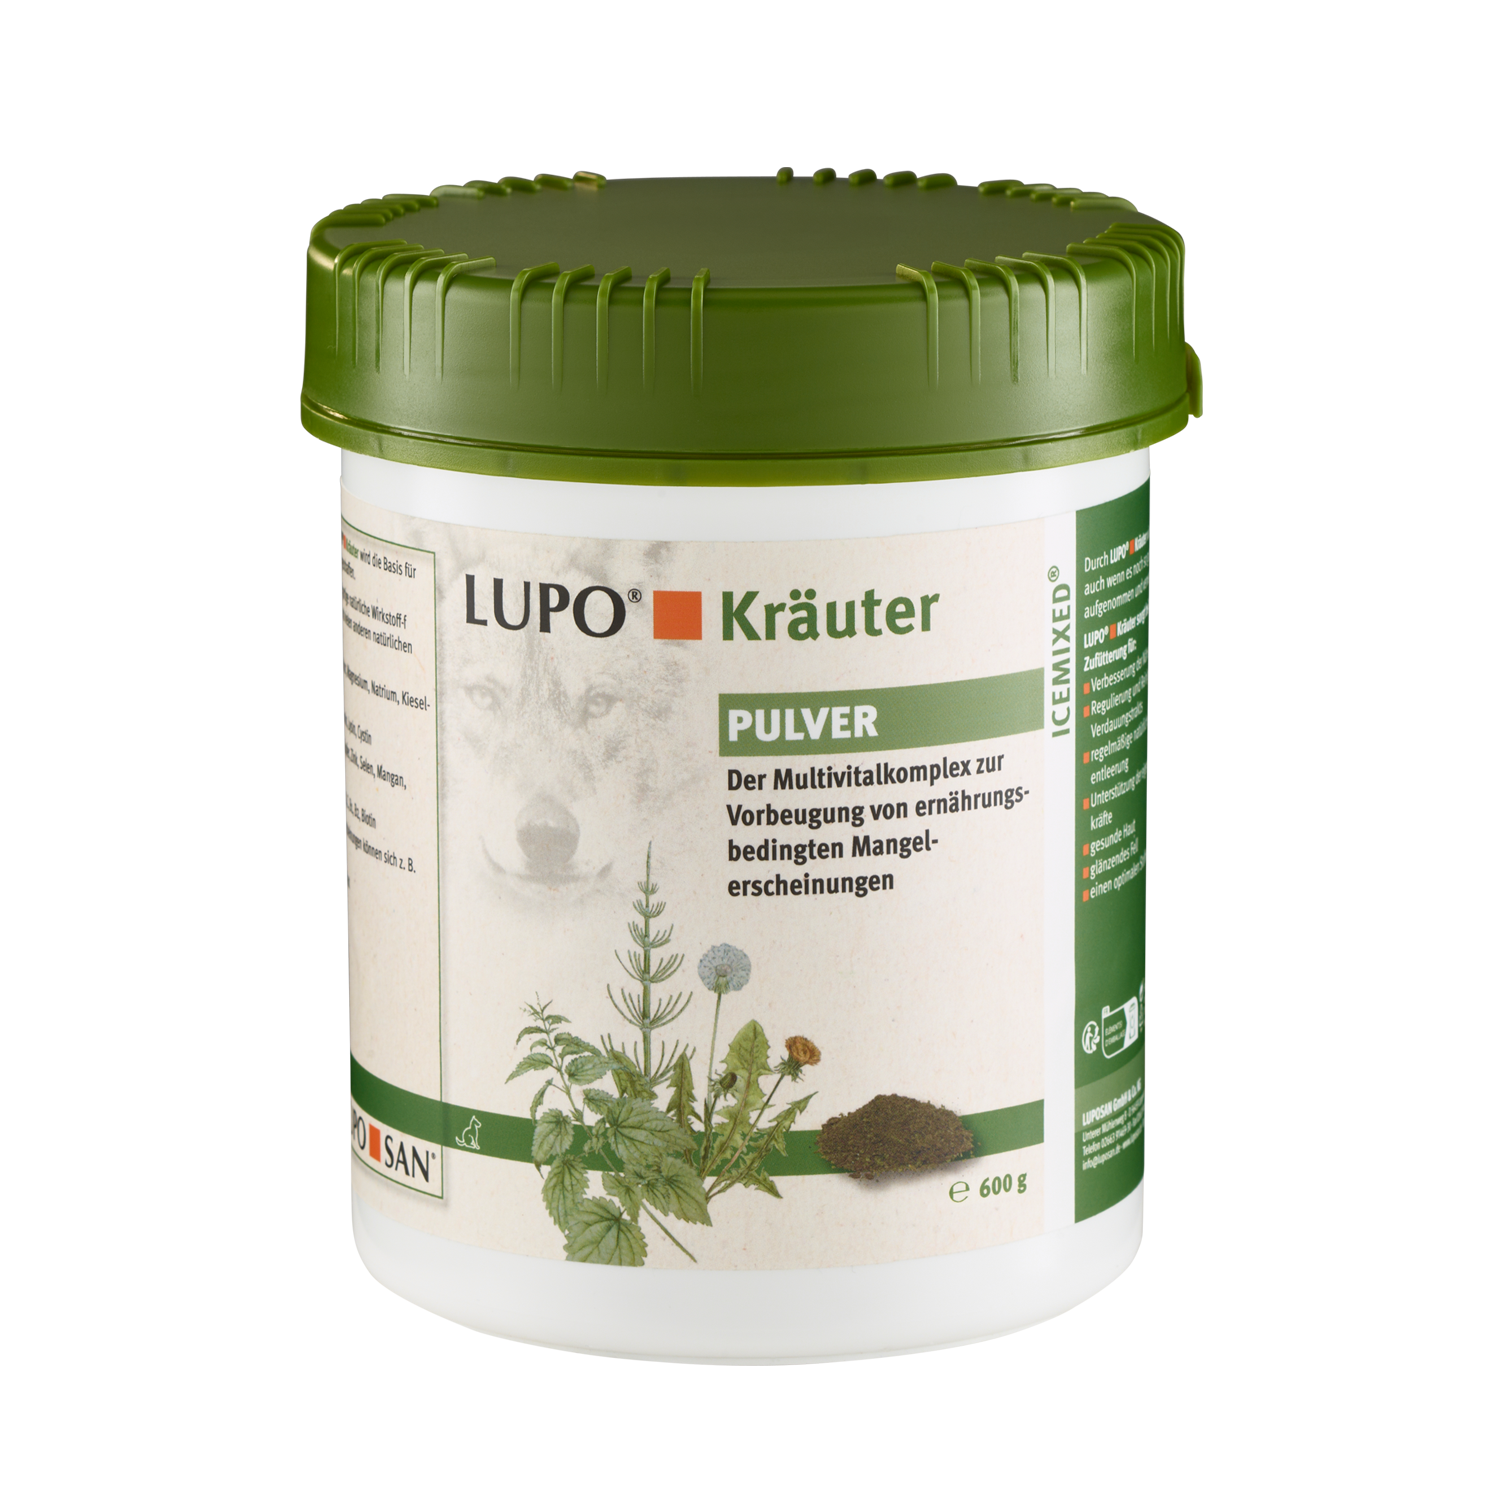 LUPO Kräuter Pulver 600 g